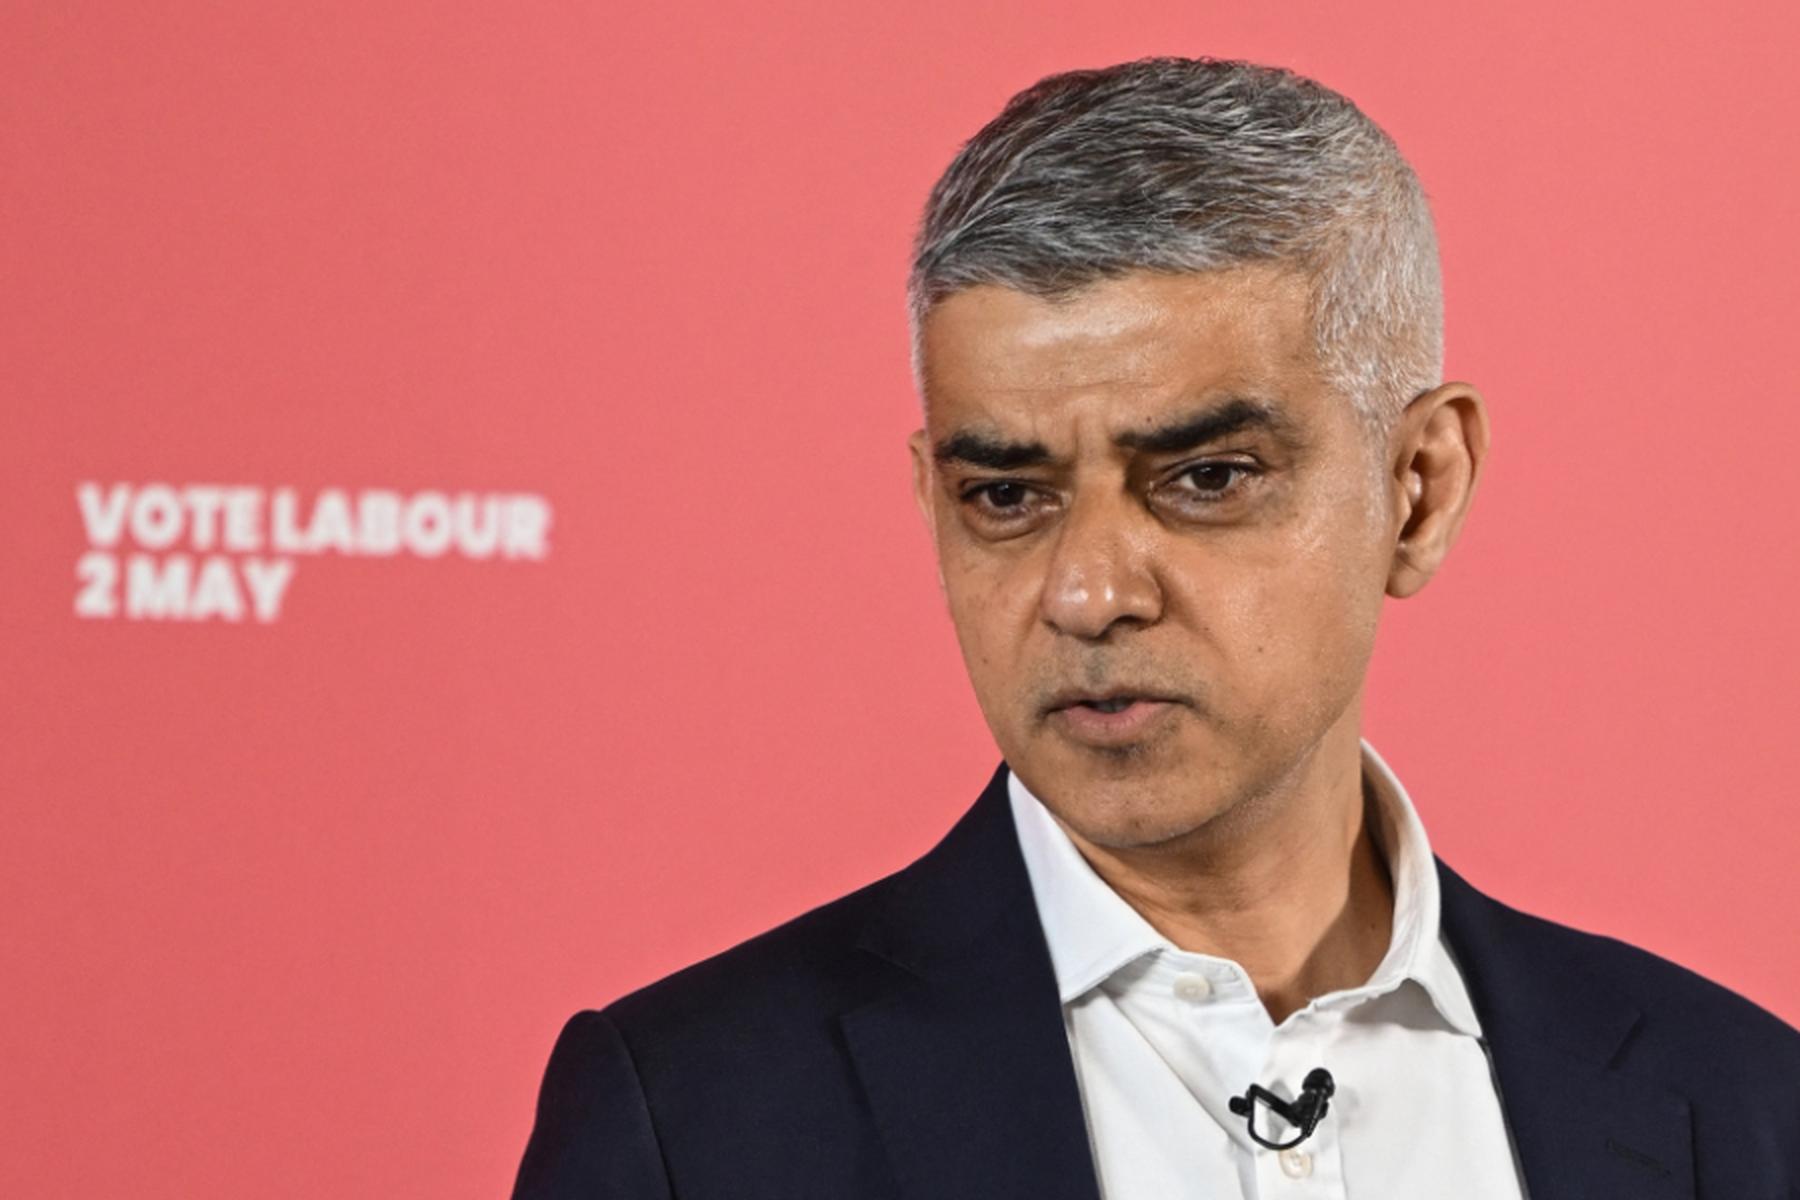 London: Ergebnis von Bürgermeisterwahl in London erwartet